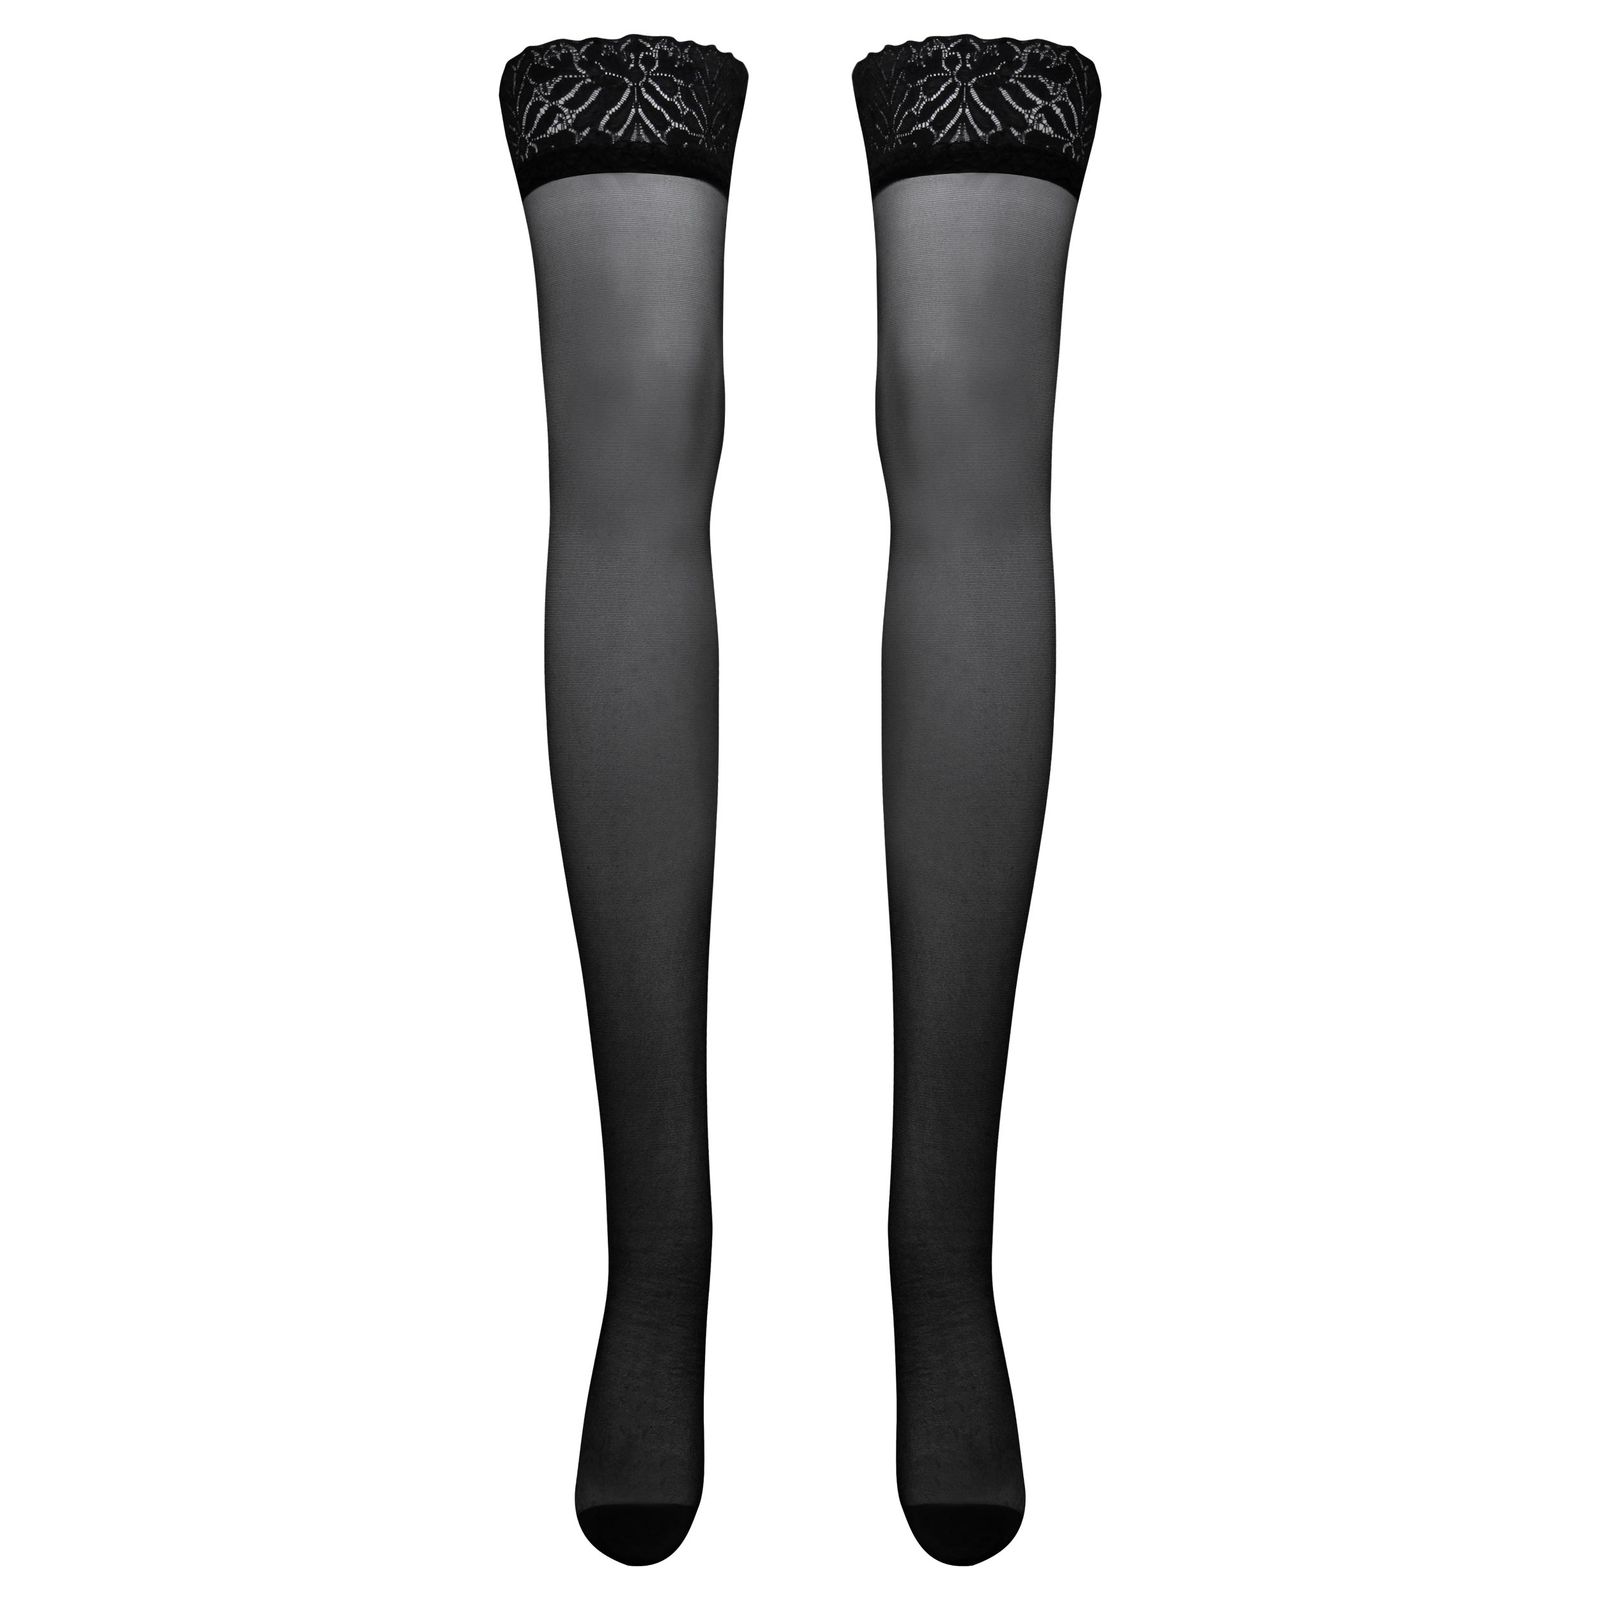 جوراب ساق بلند زنانه ماییلدا مدل توری کد 4786-2072 رنگ مشکی -  - 1